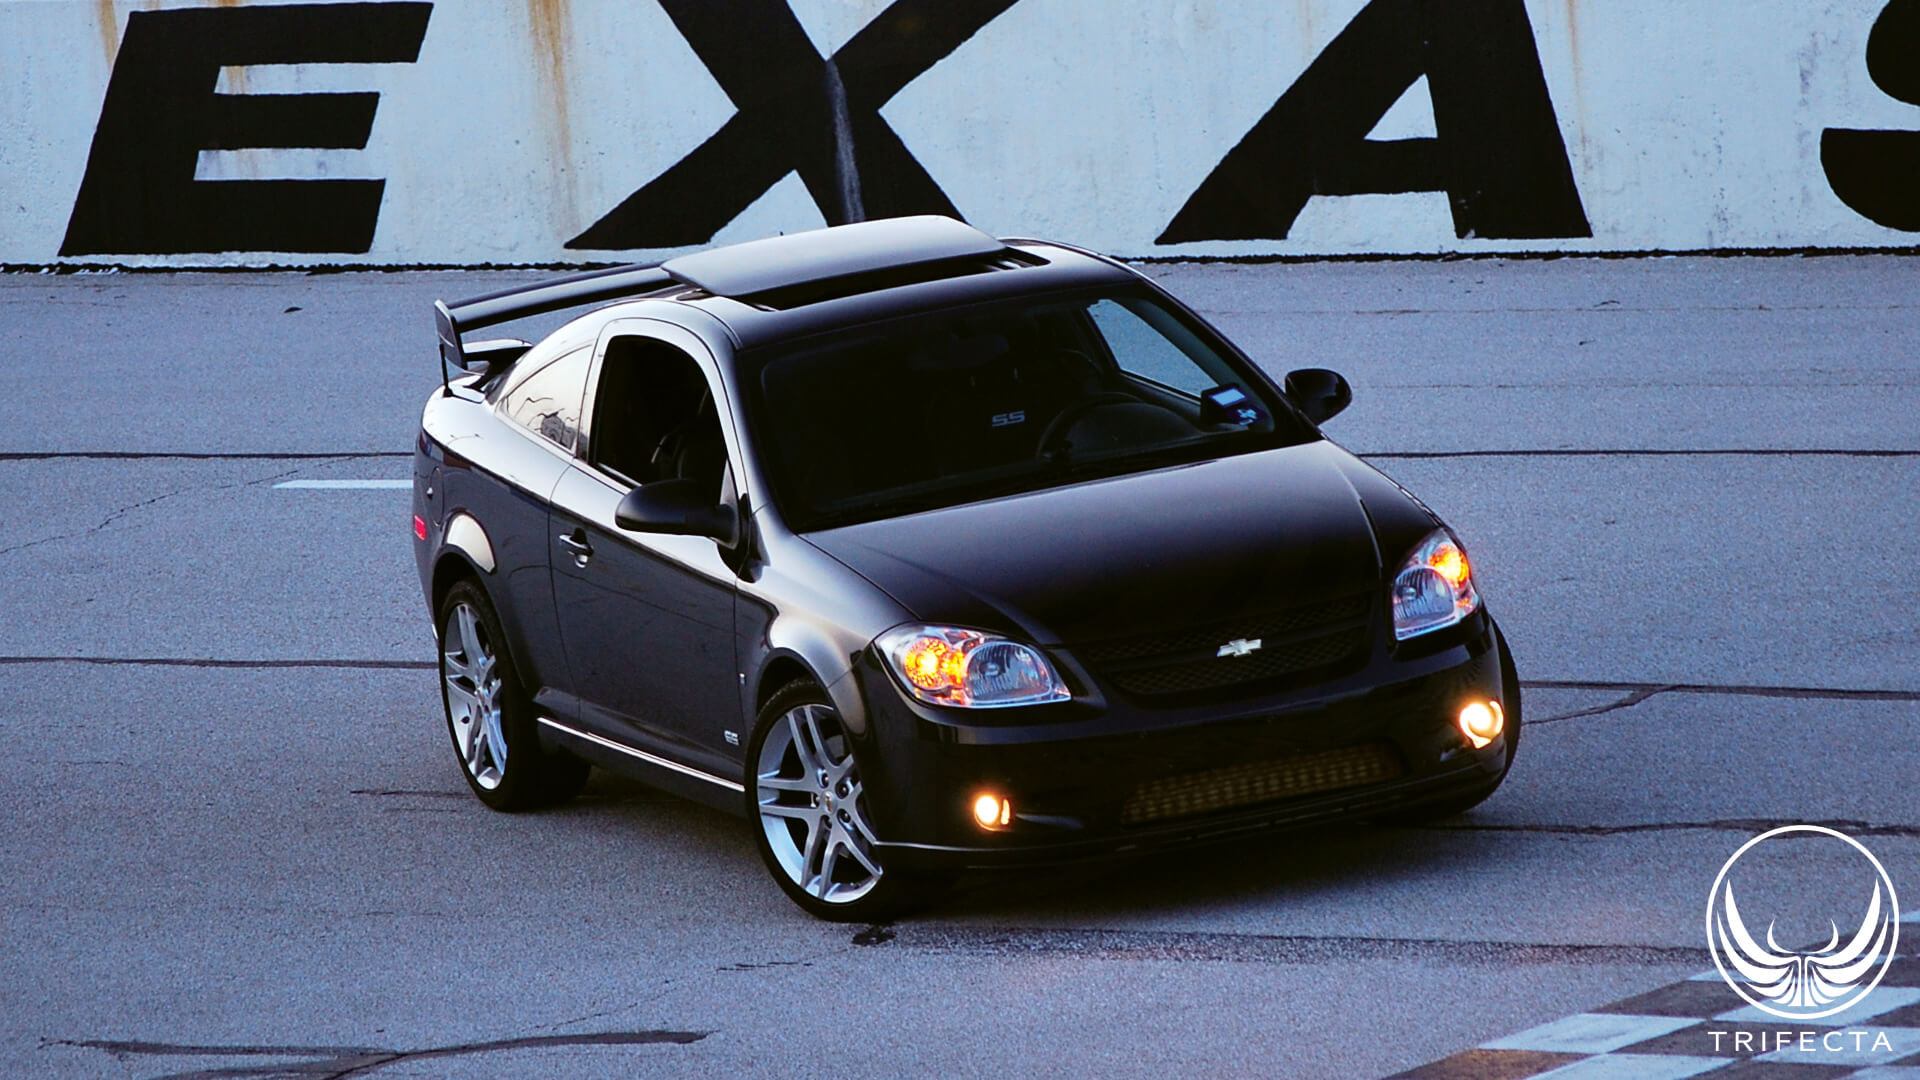 Product Review: 2008--2010 Chevrolet Cobalt - 2.0L Turbo - Advantage+